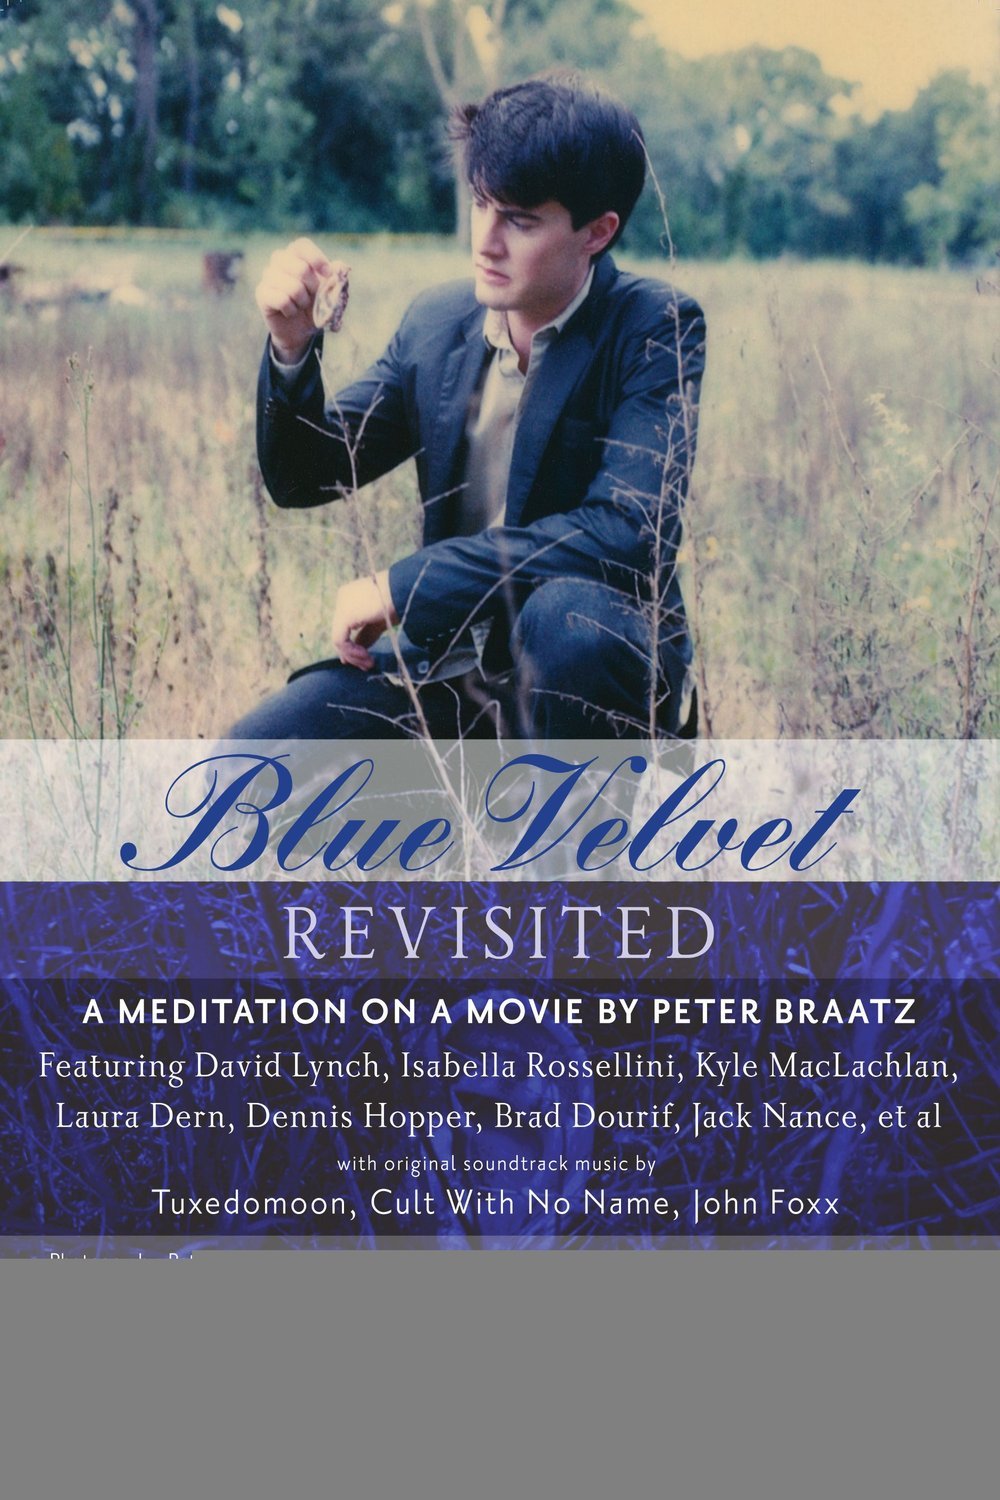 Poster of the movie Blue Velvet Revisited